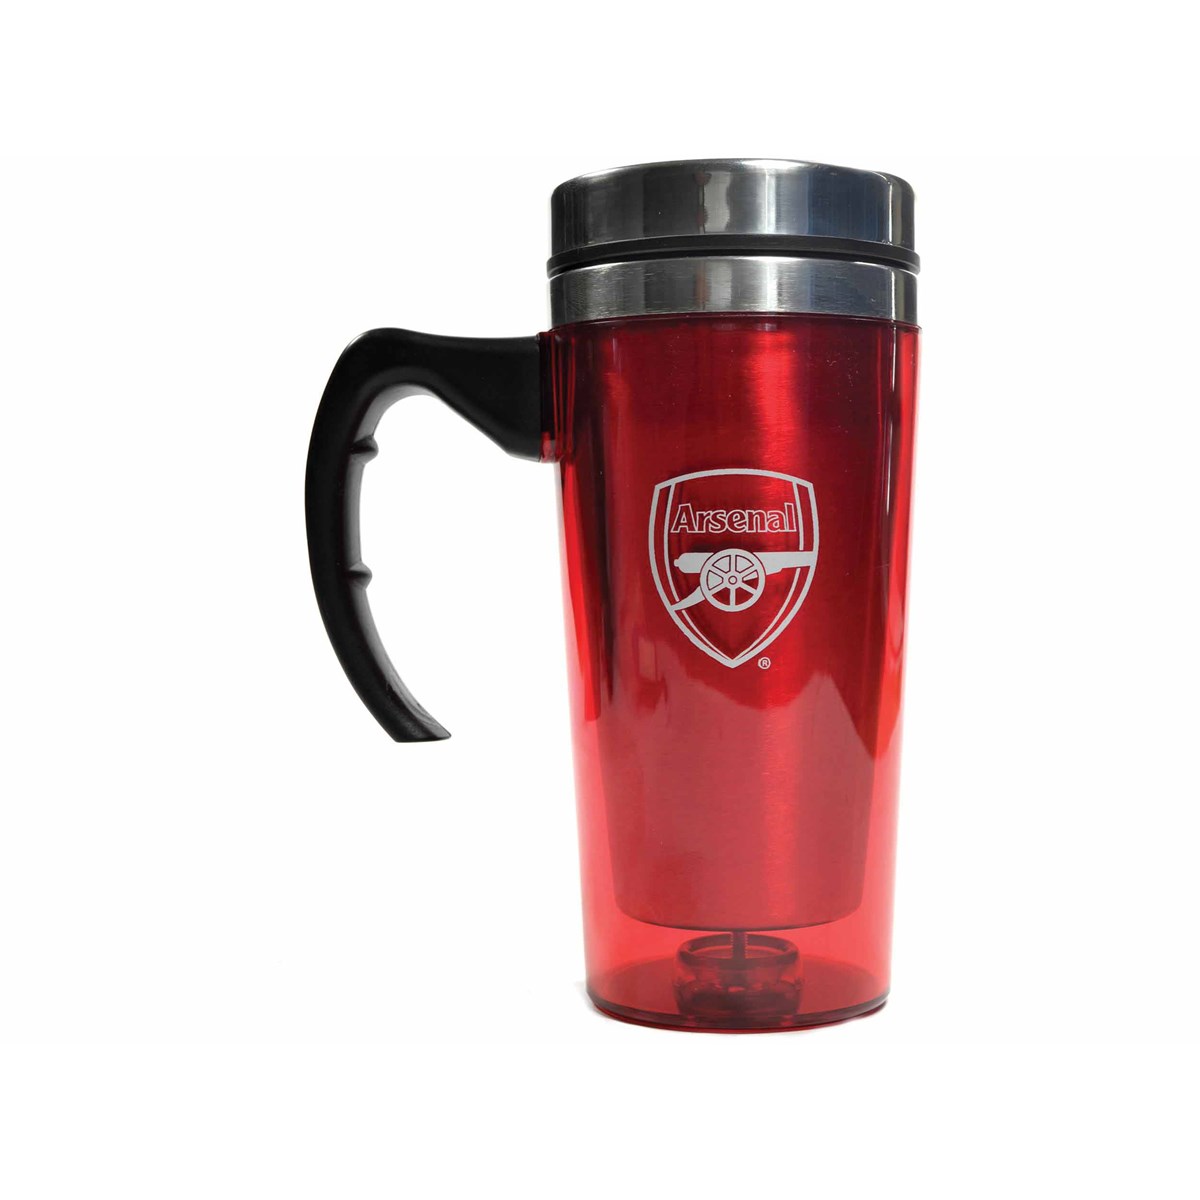 Arsenal FC Travel Mug